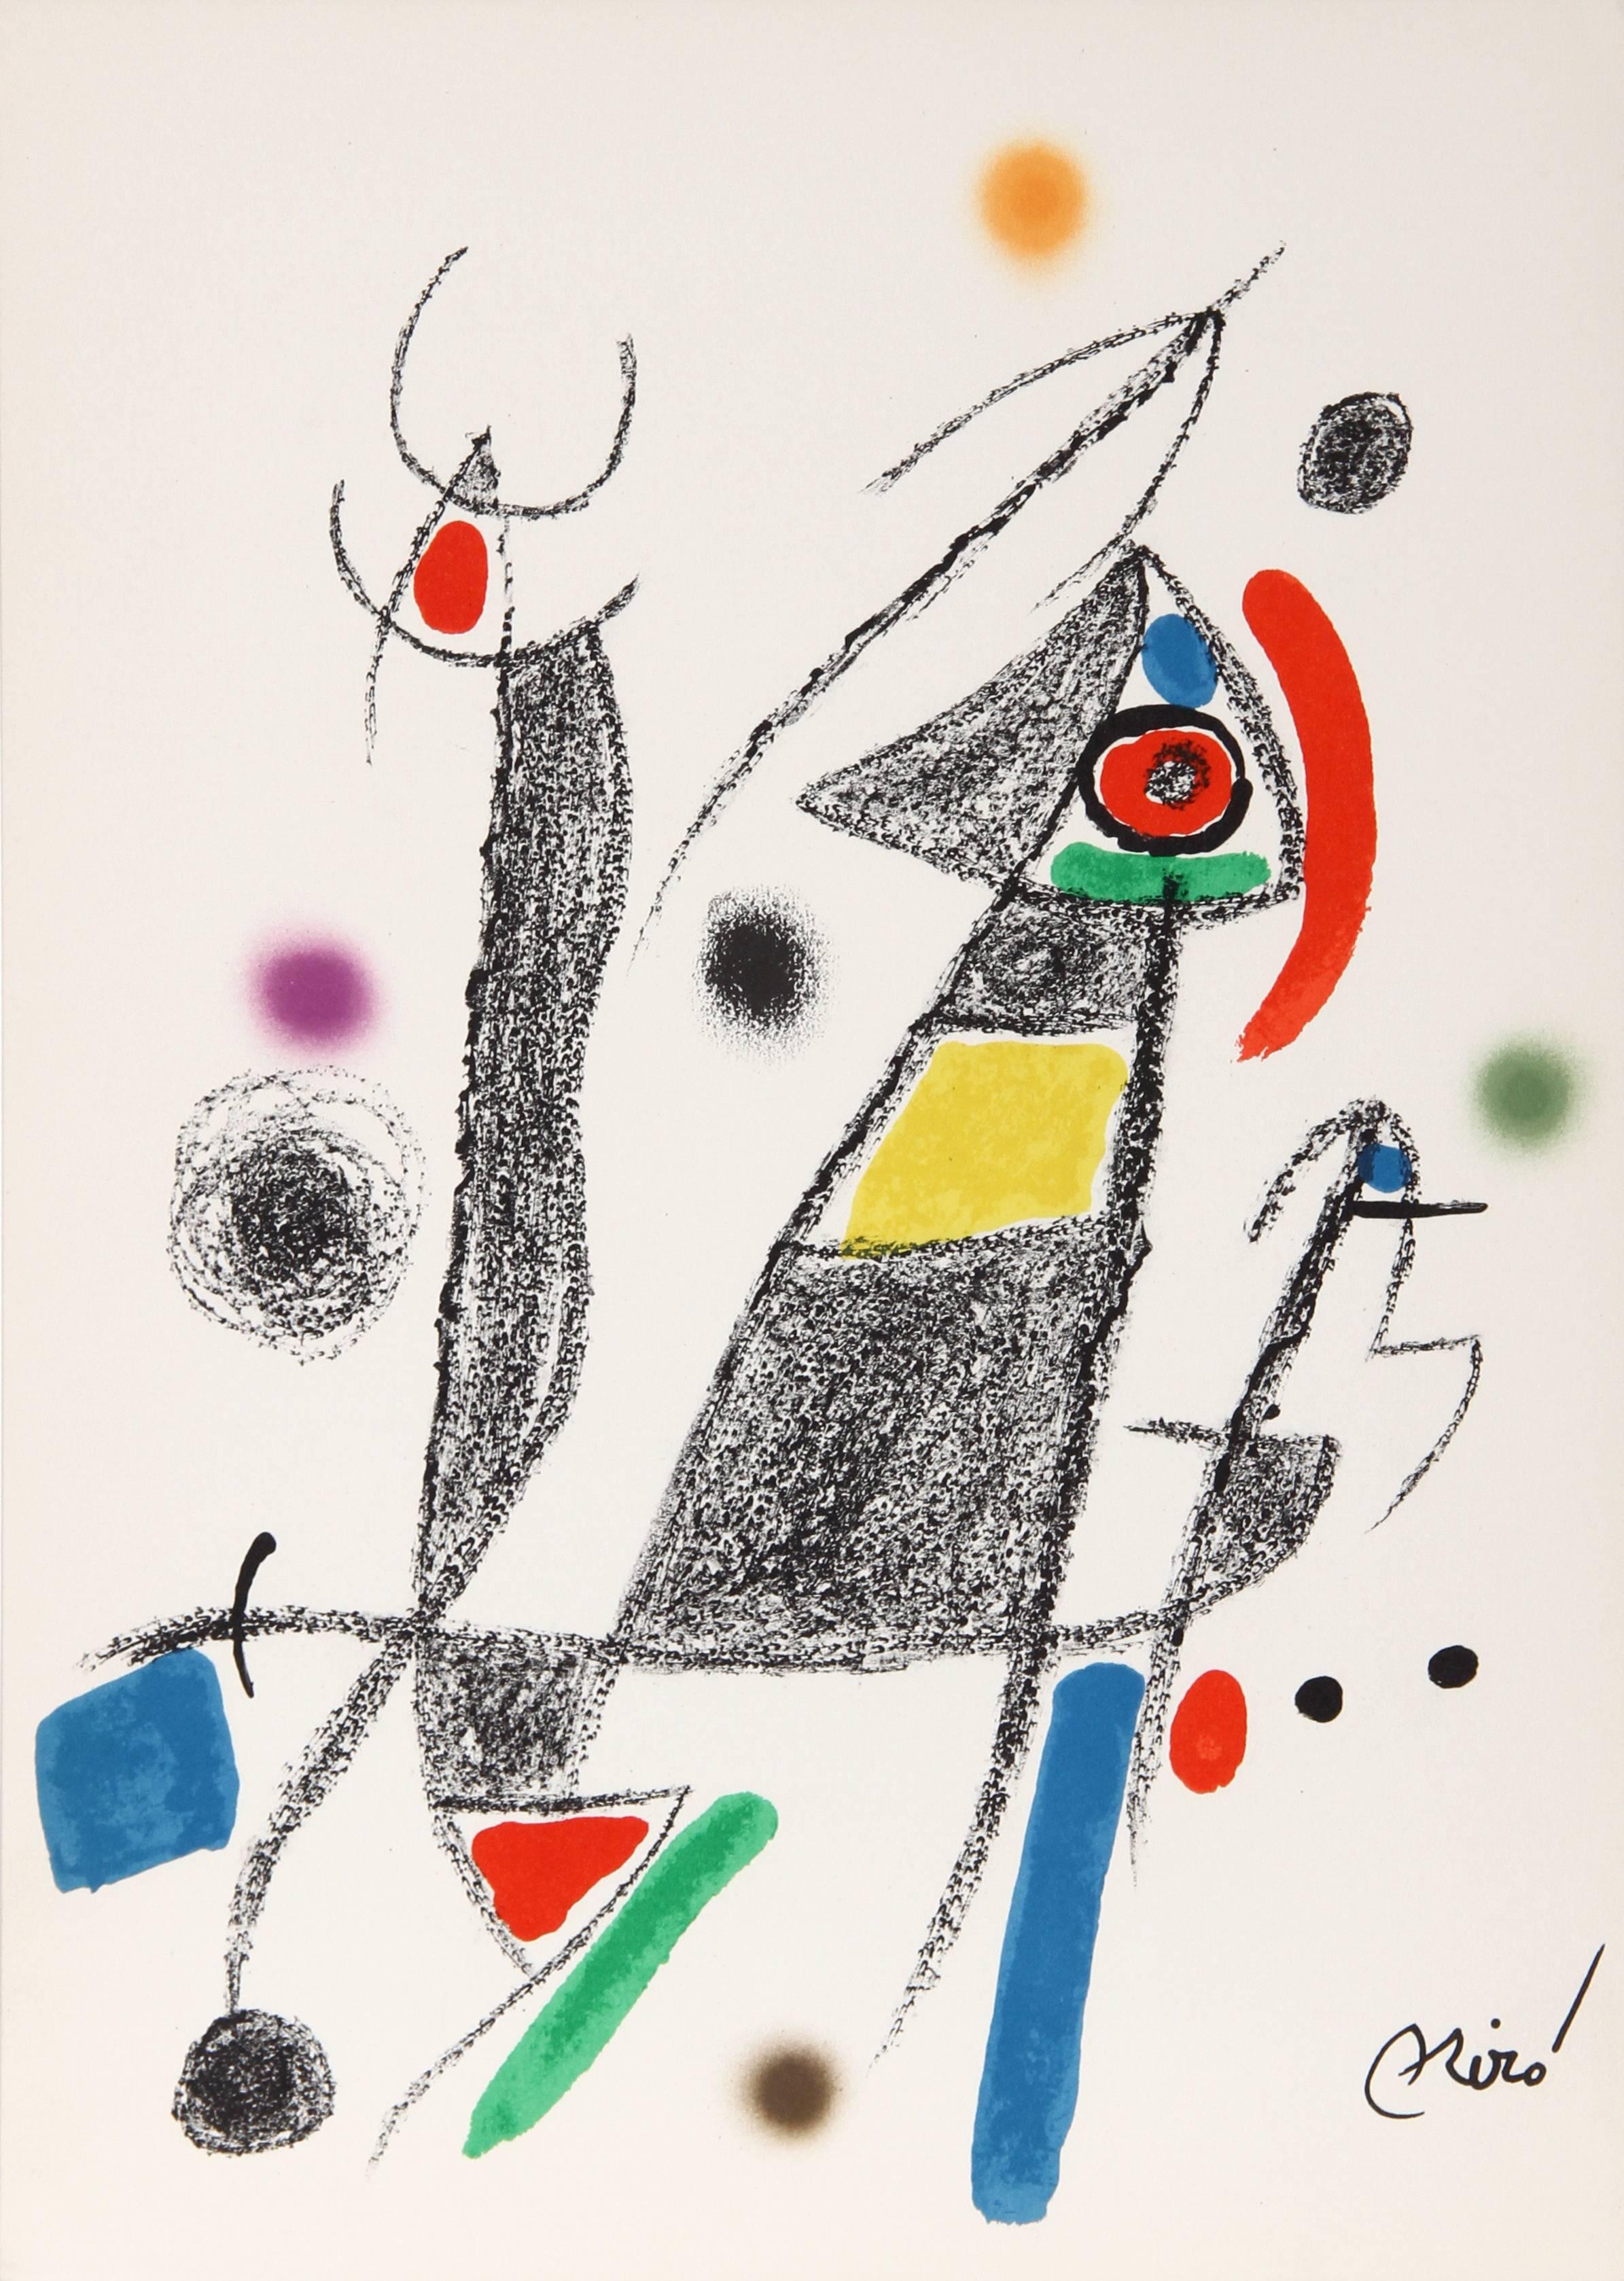 Joan Miró Abstract Print - Maravillas con Variaciones Acrosticas en el jardin de Miro (Number 8)